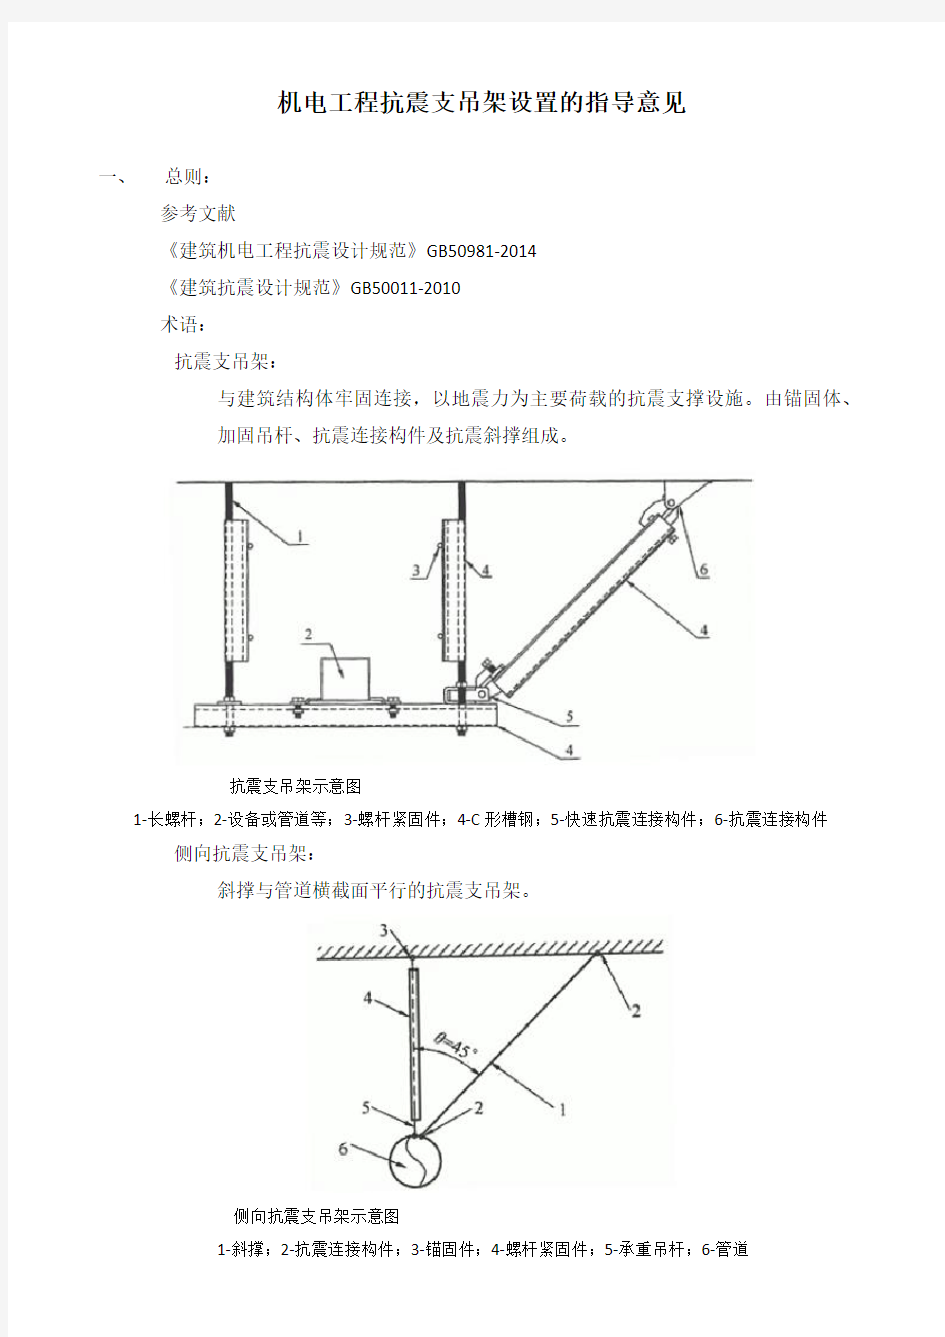 机电工程抗震支吊架设置的指导意见